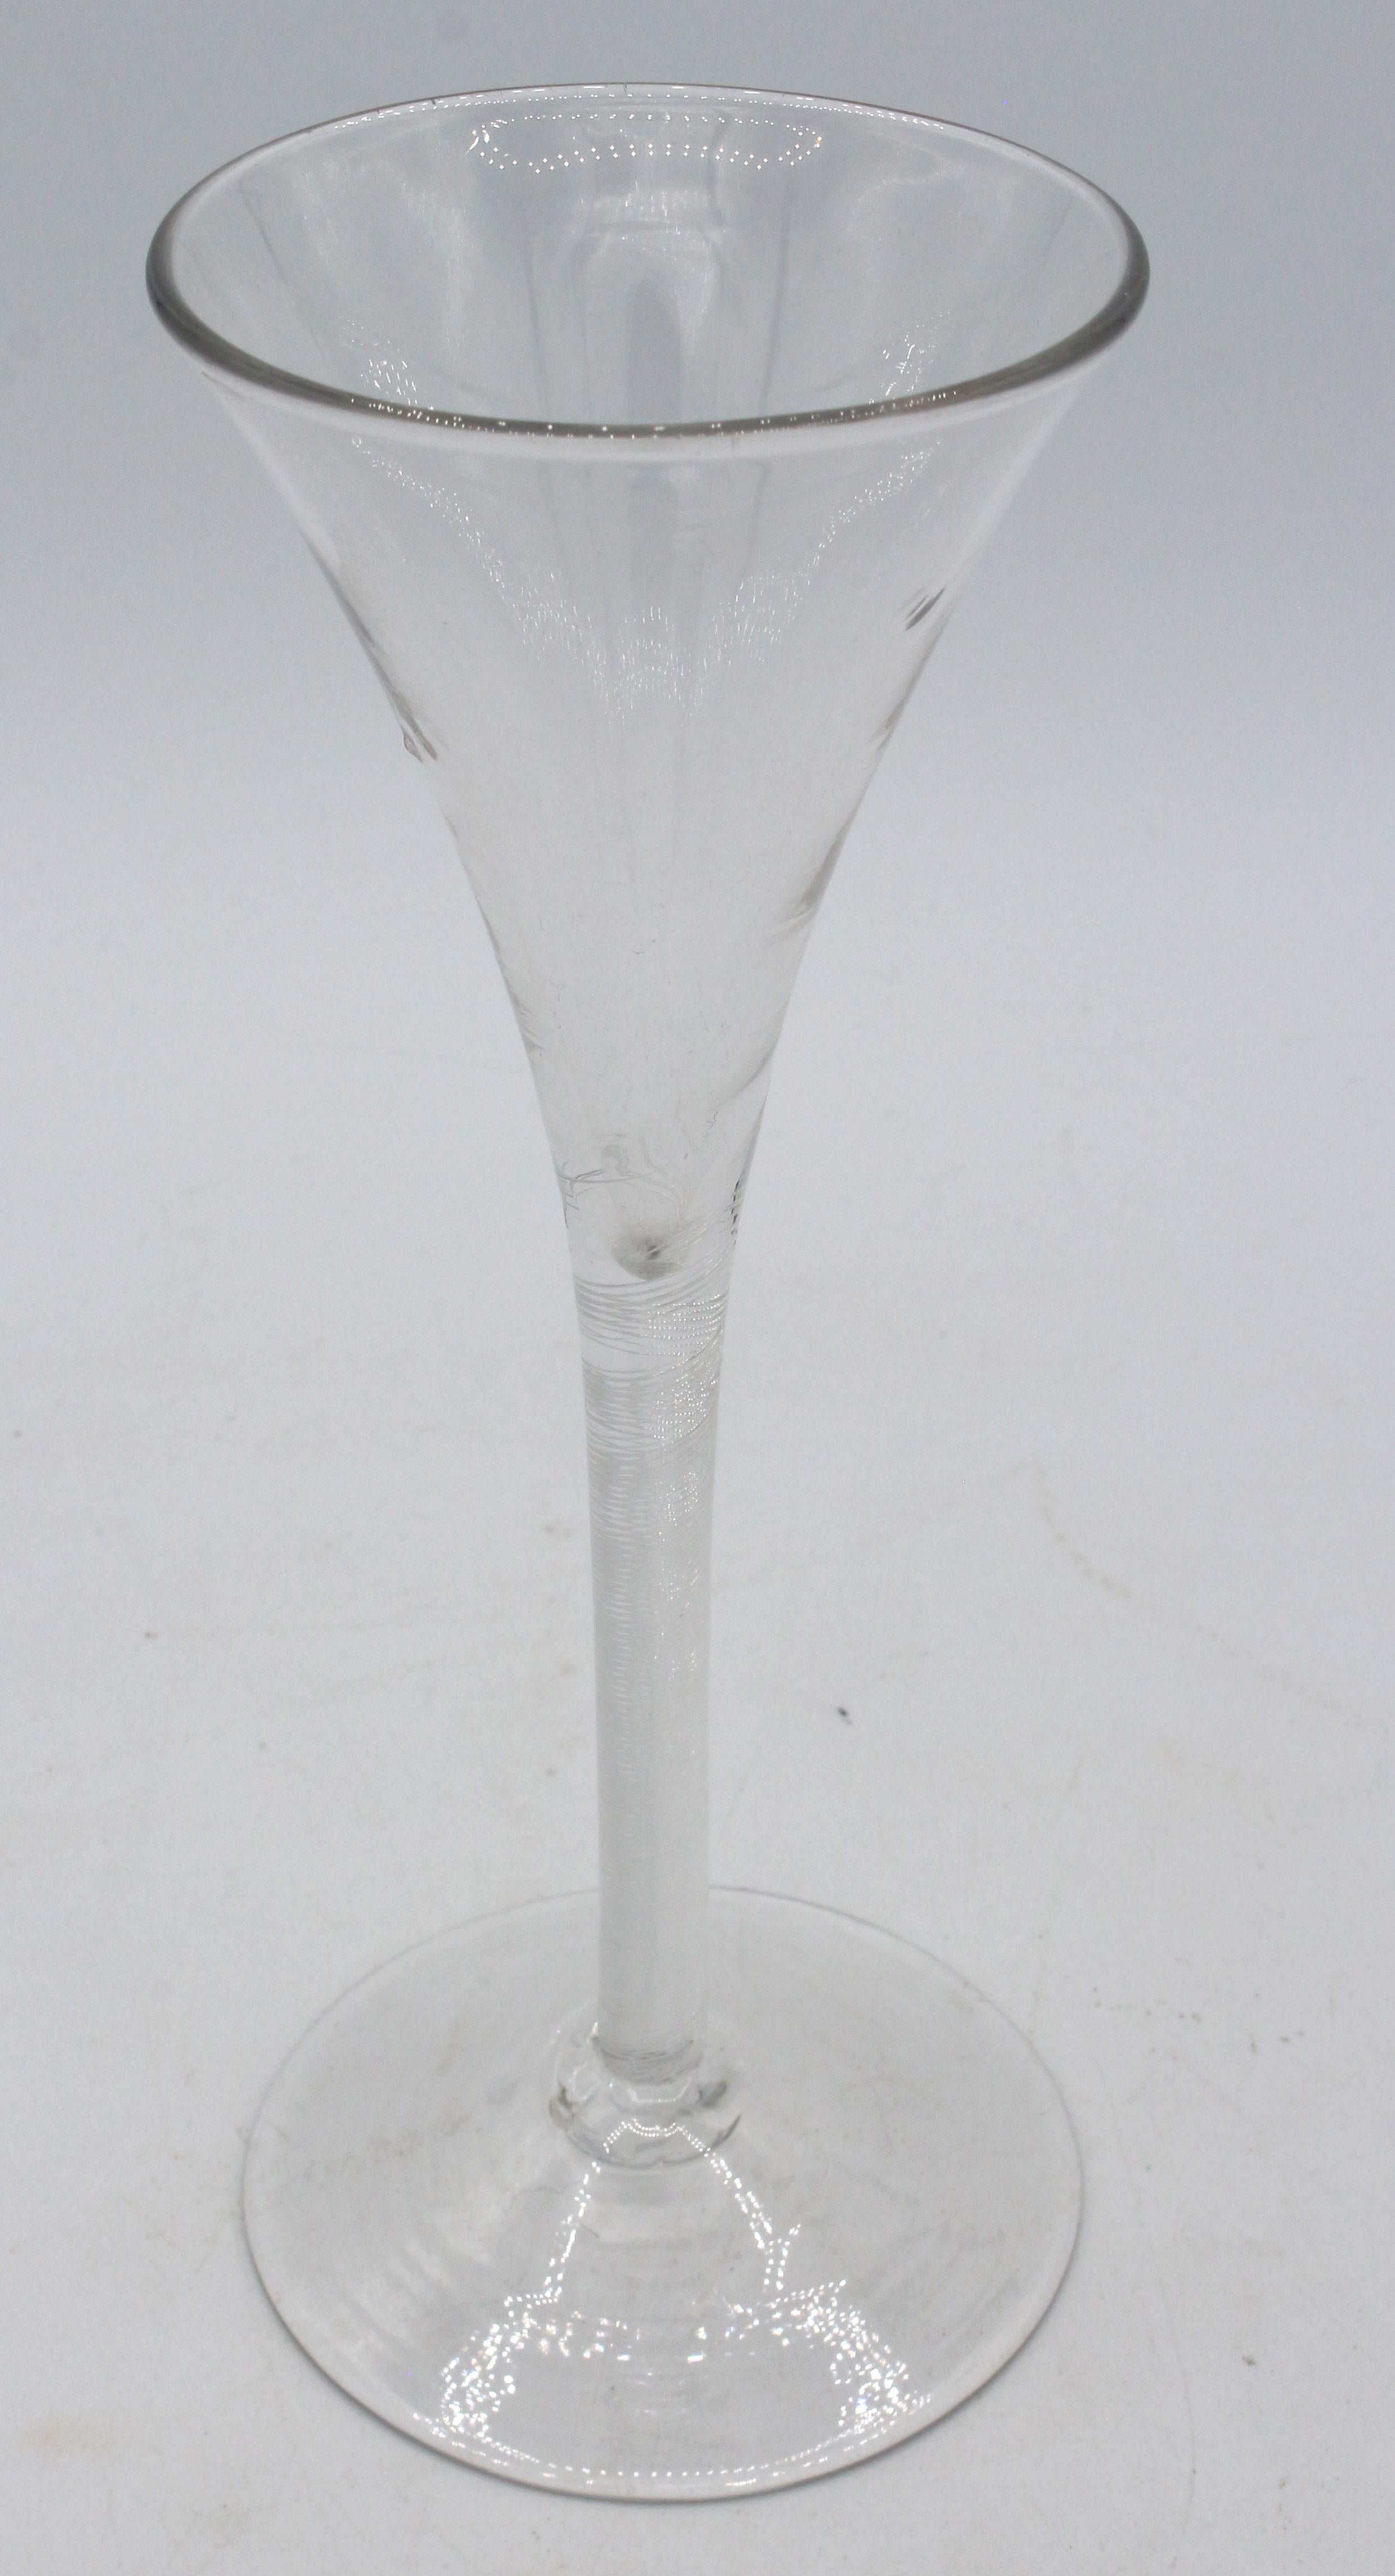 Georgianisches Toastglas in Trompetenform, um 1750, England. Äußerst anmutig - mehrspiralige Luftdrehung. Schöne graue Farbe. Kleine Einschlüsse in der Schale, Werkzeugspuren und Rillen. Grob geknicktes Kreuzschlitzwerkzeug. Provenienz: Leslie